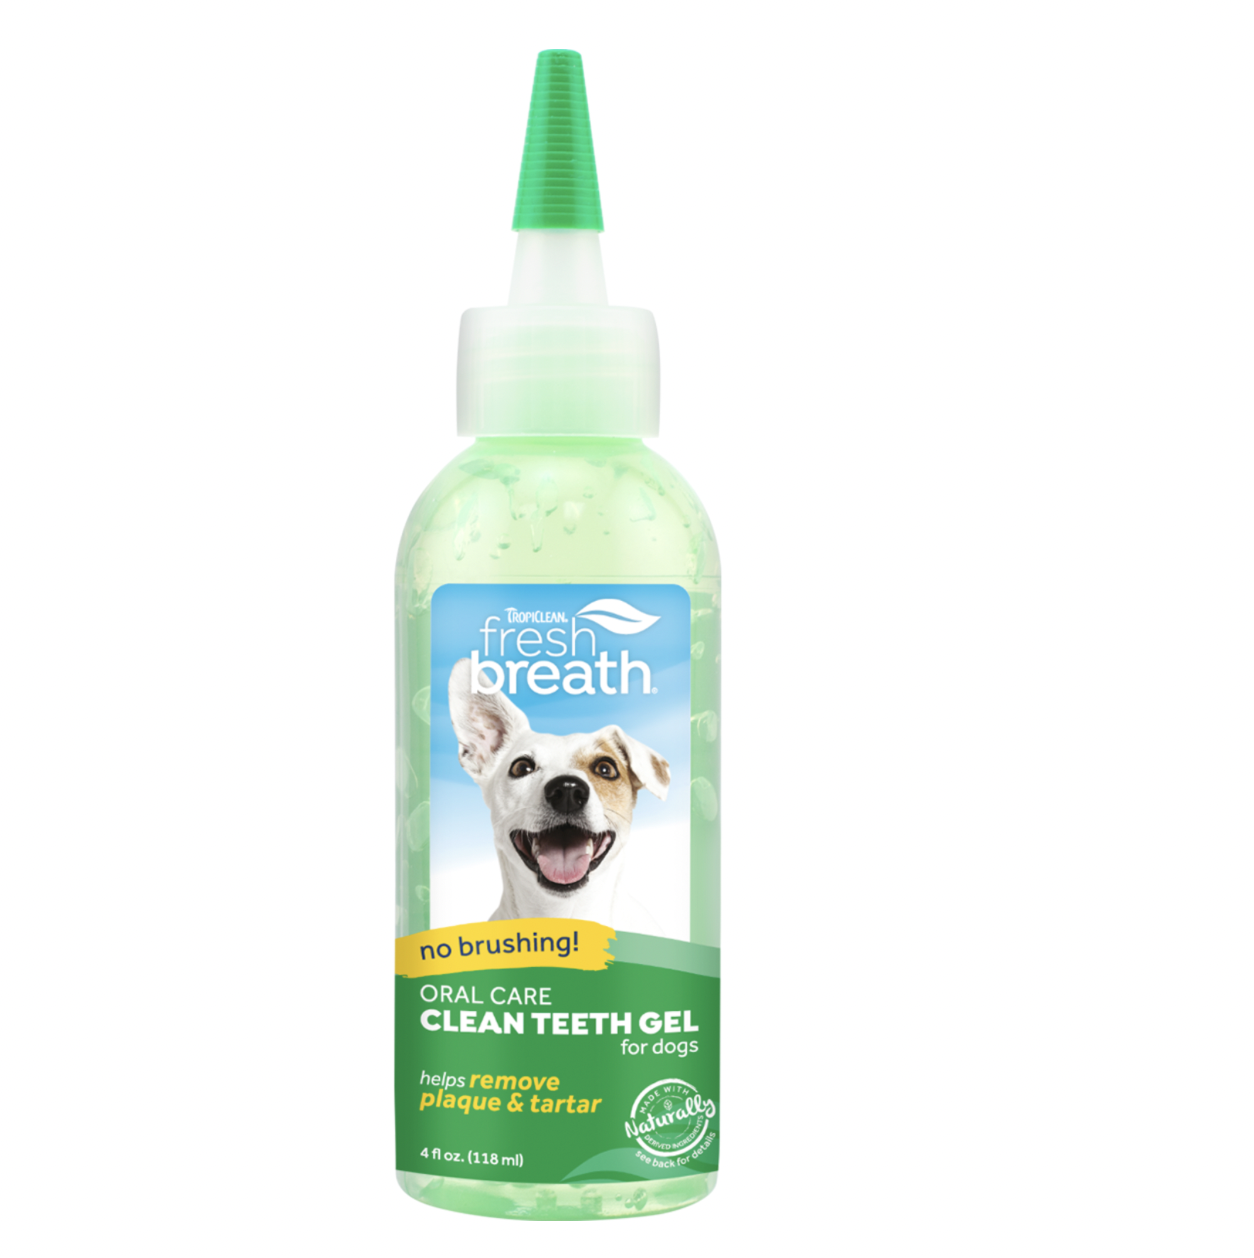 Clean Teeth Gel for Dogs- TropiClean 